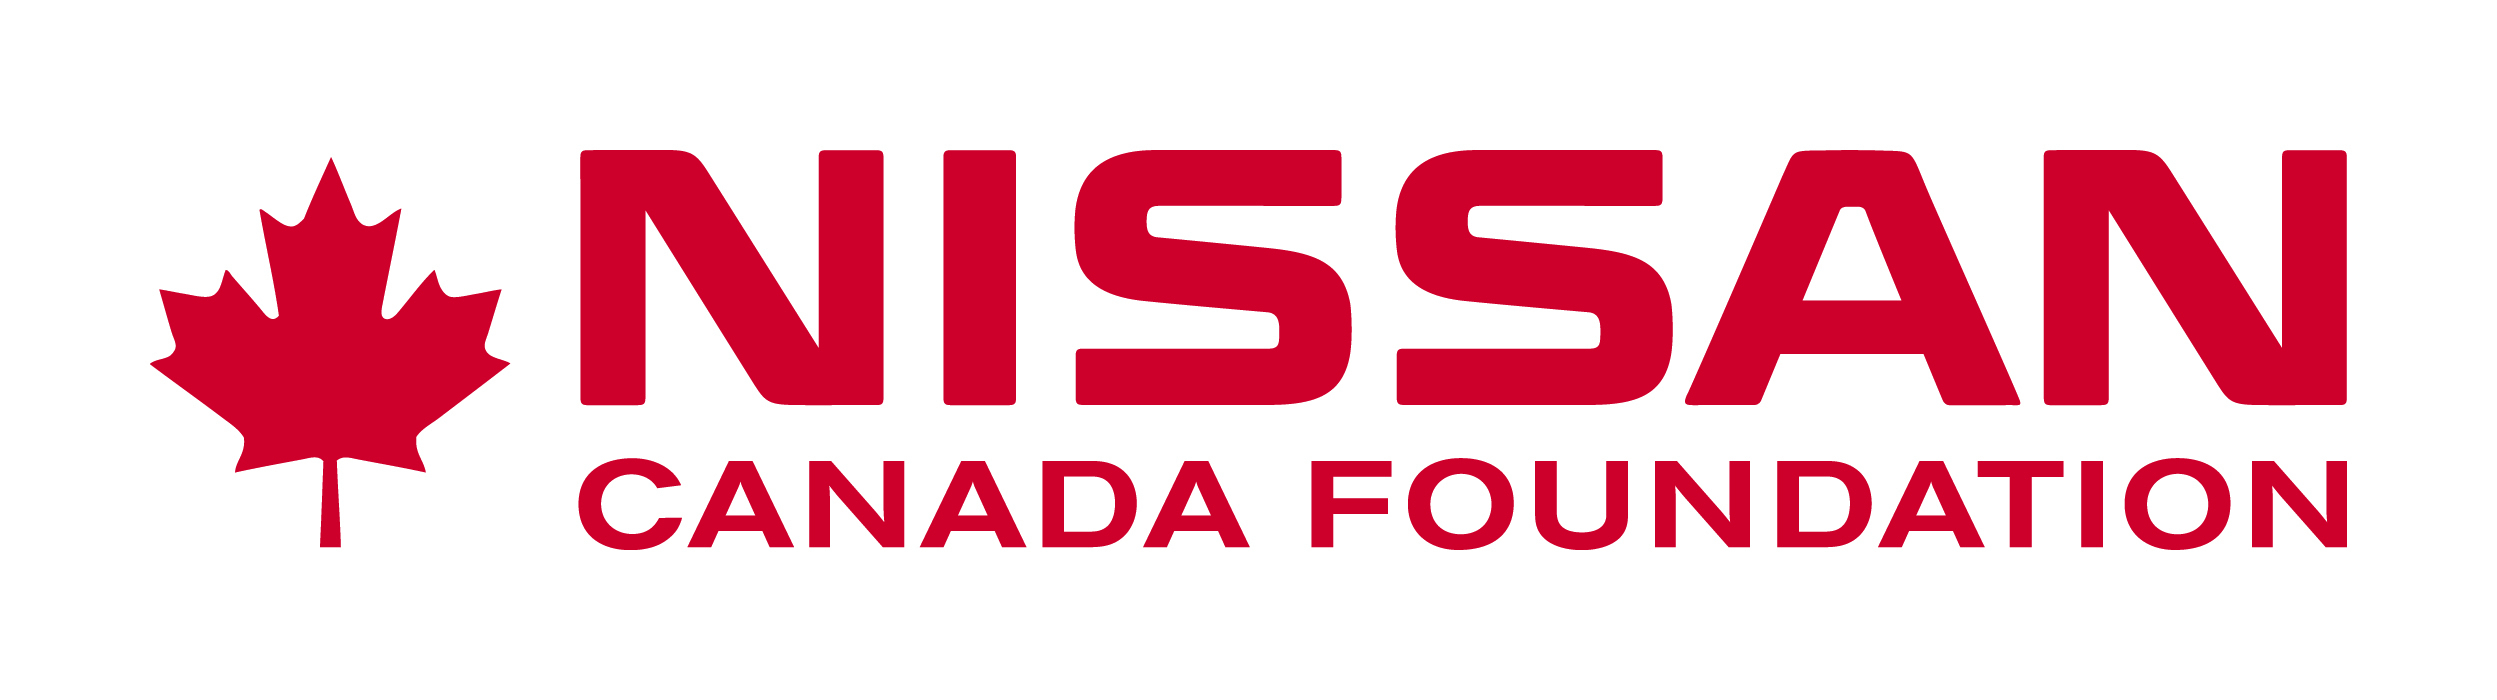 Nissan Canada Foundation Logo